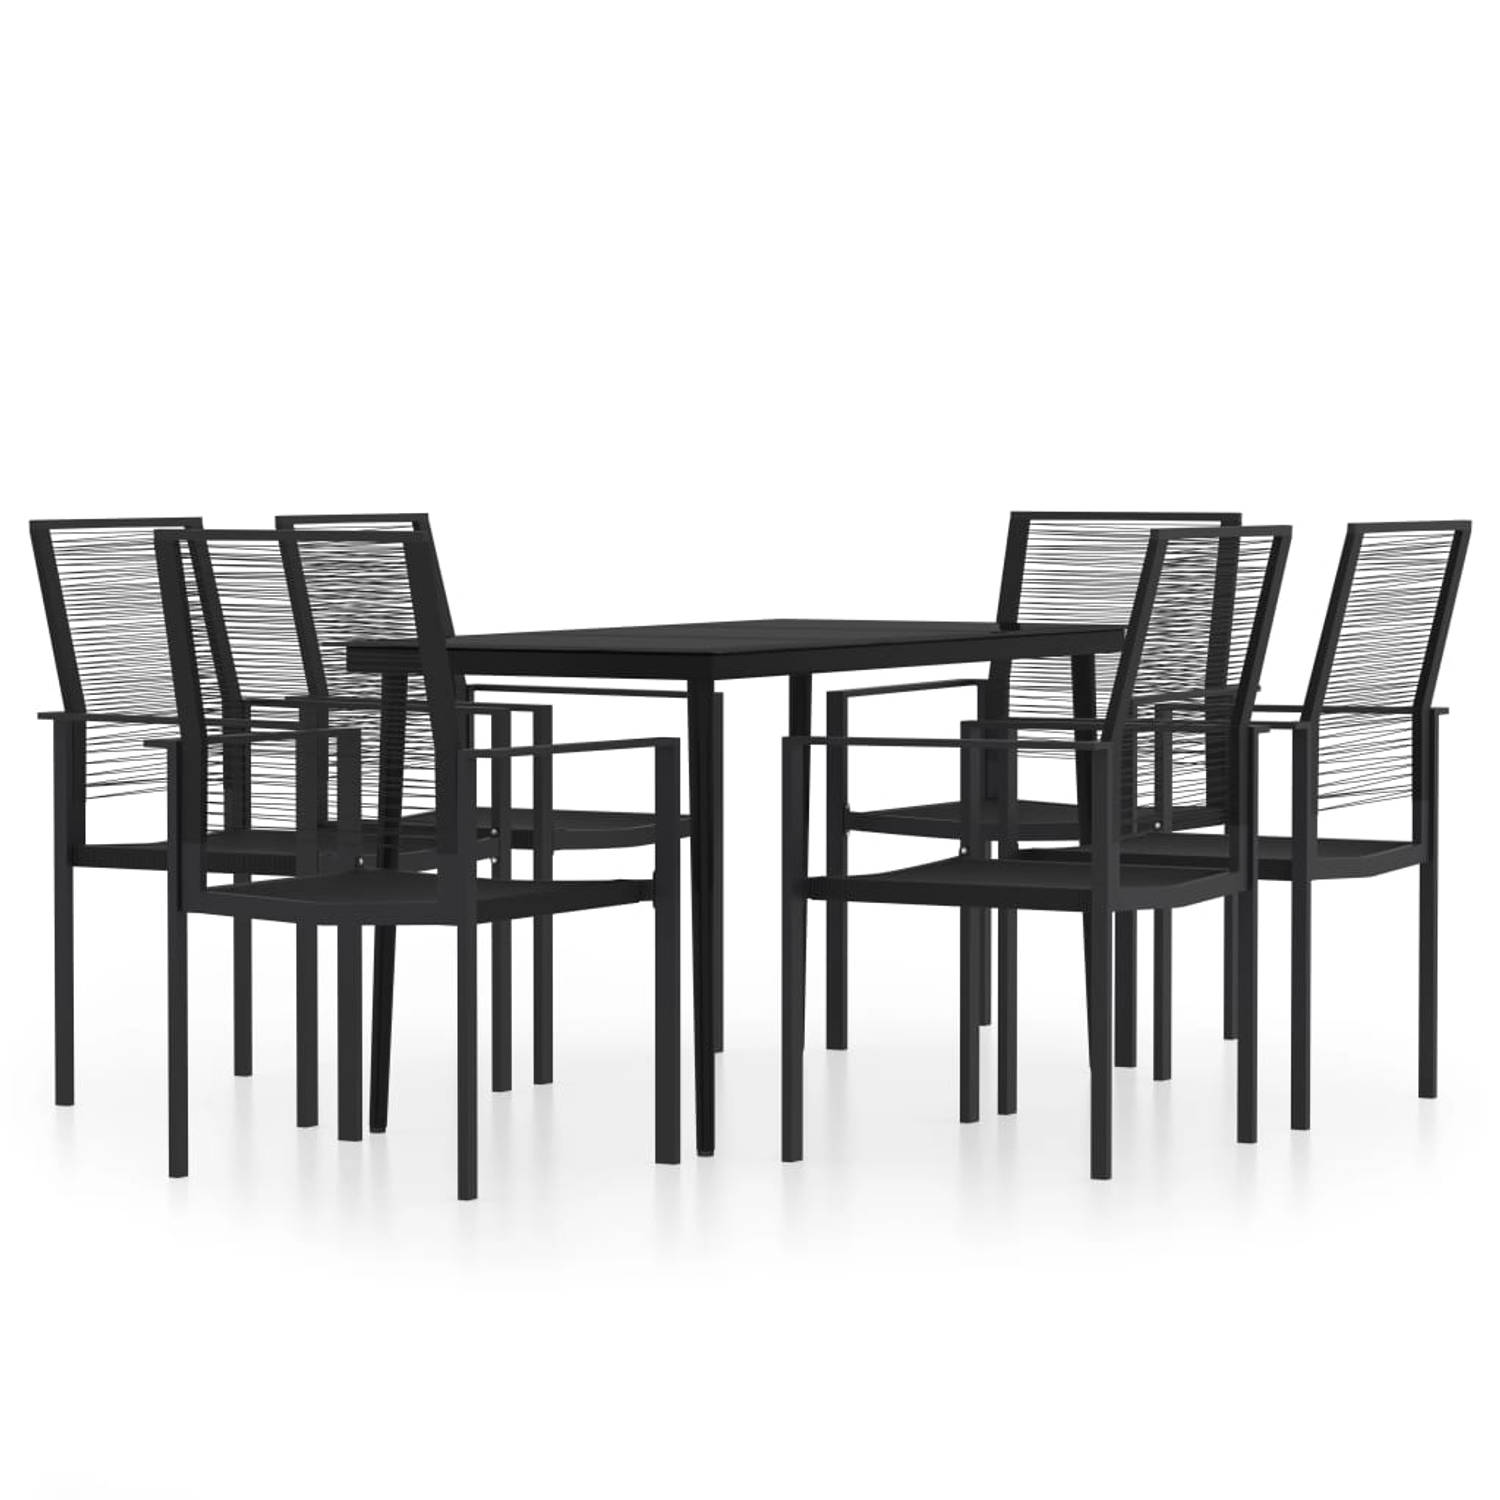 The Living Store tuinset zwart gepoedercoat staal en glas 140x70x74 cm - eethoek met 6 stoelen 60x55x90 cm